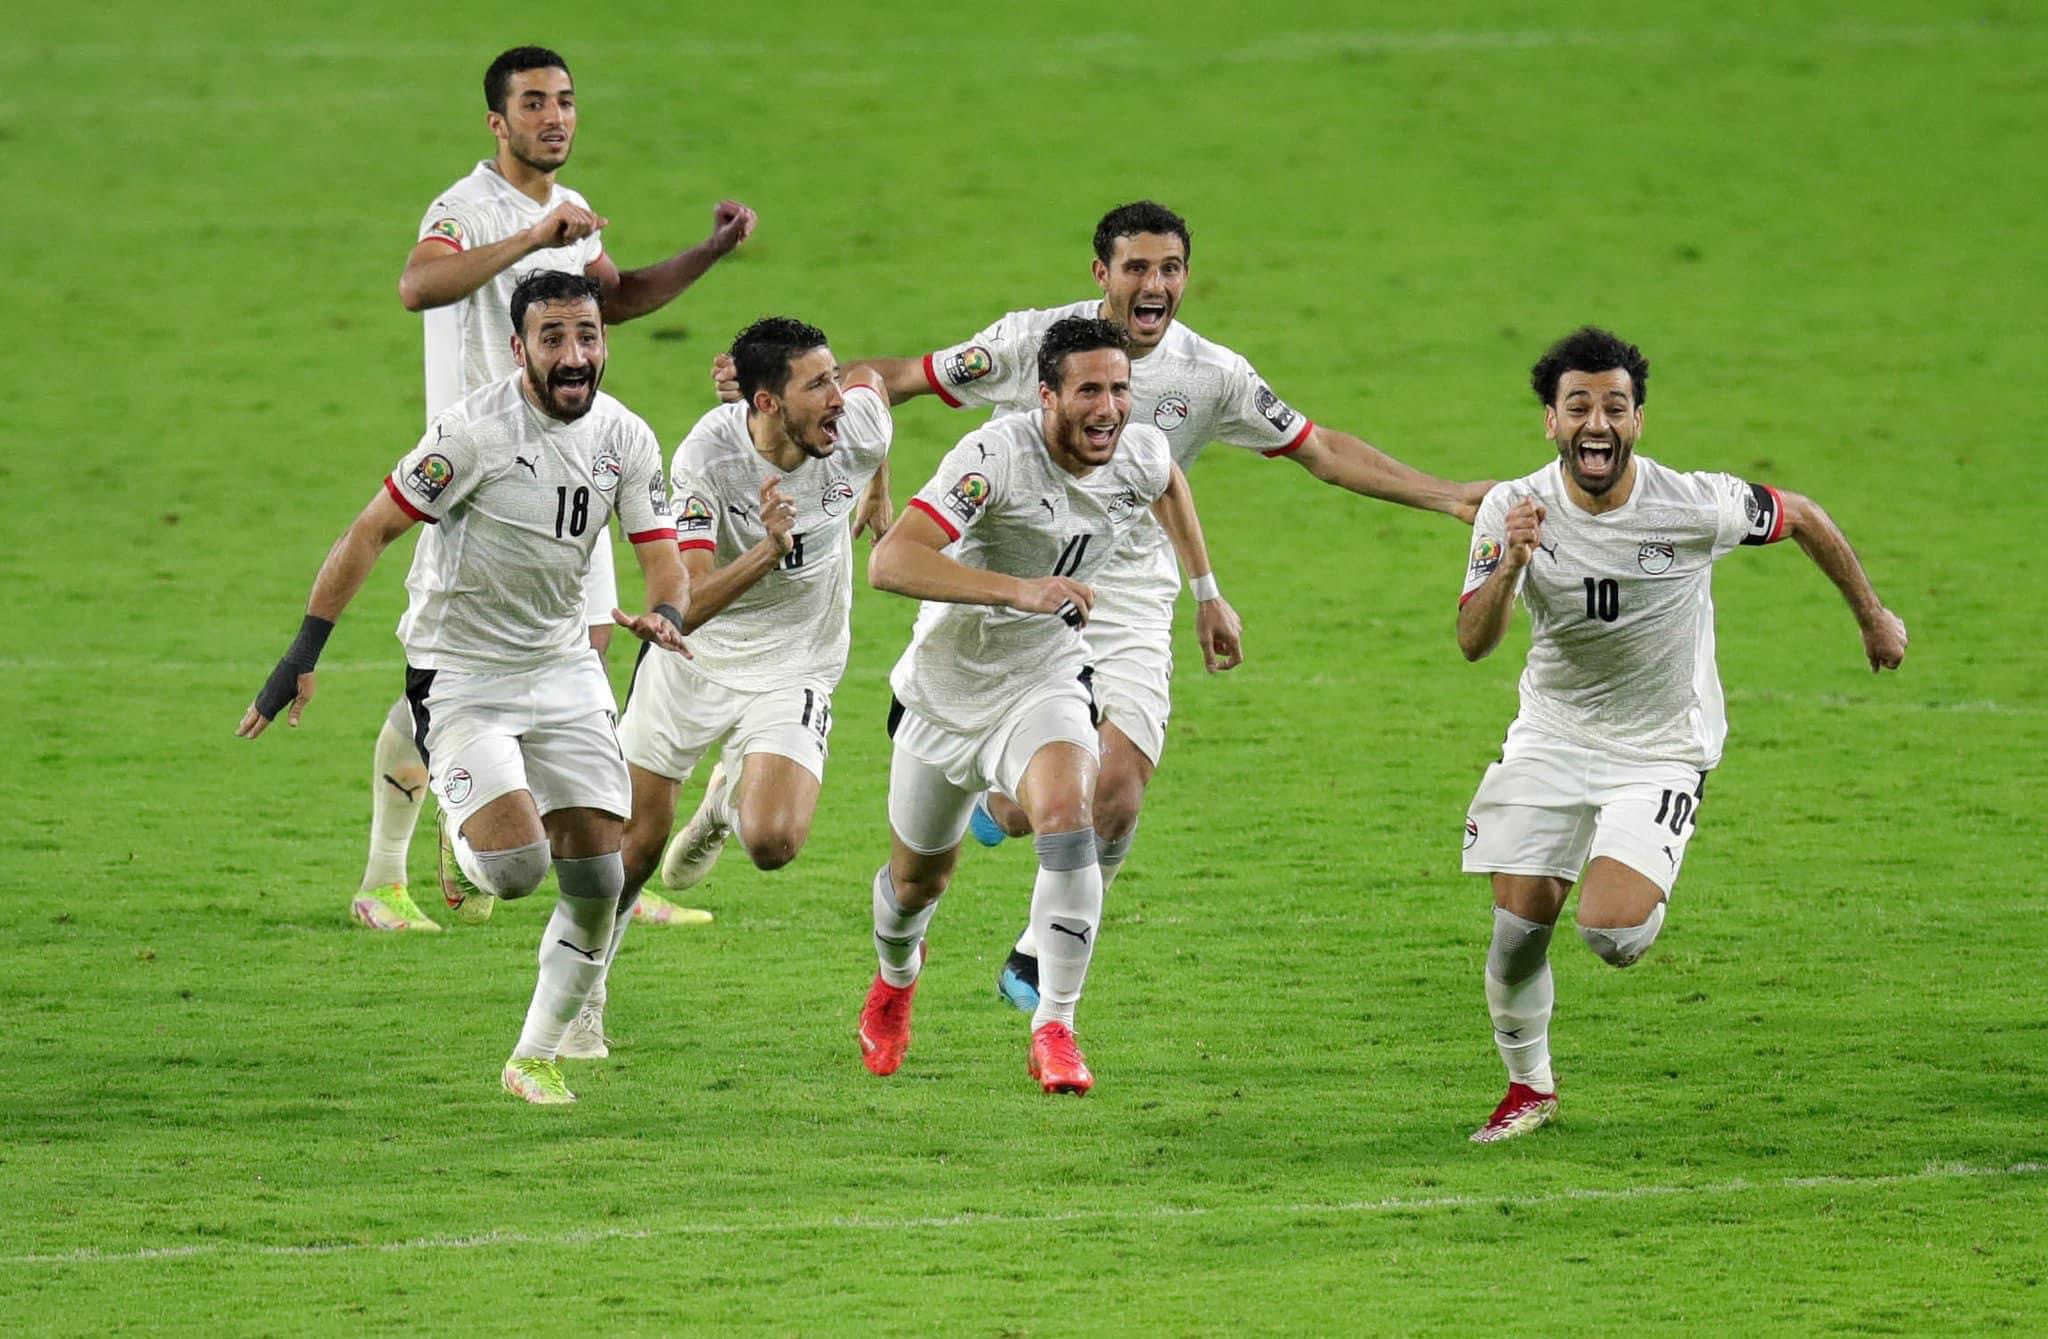 إعتراض من المنتخب المصري إلى الكاف بشأن المباراة النهائية